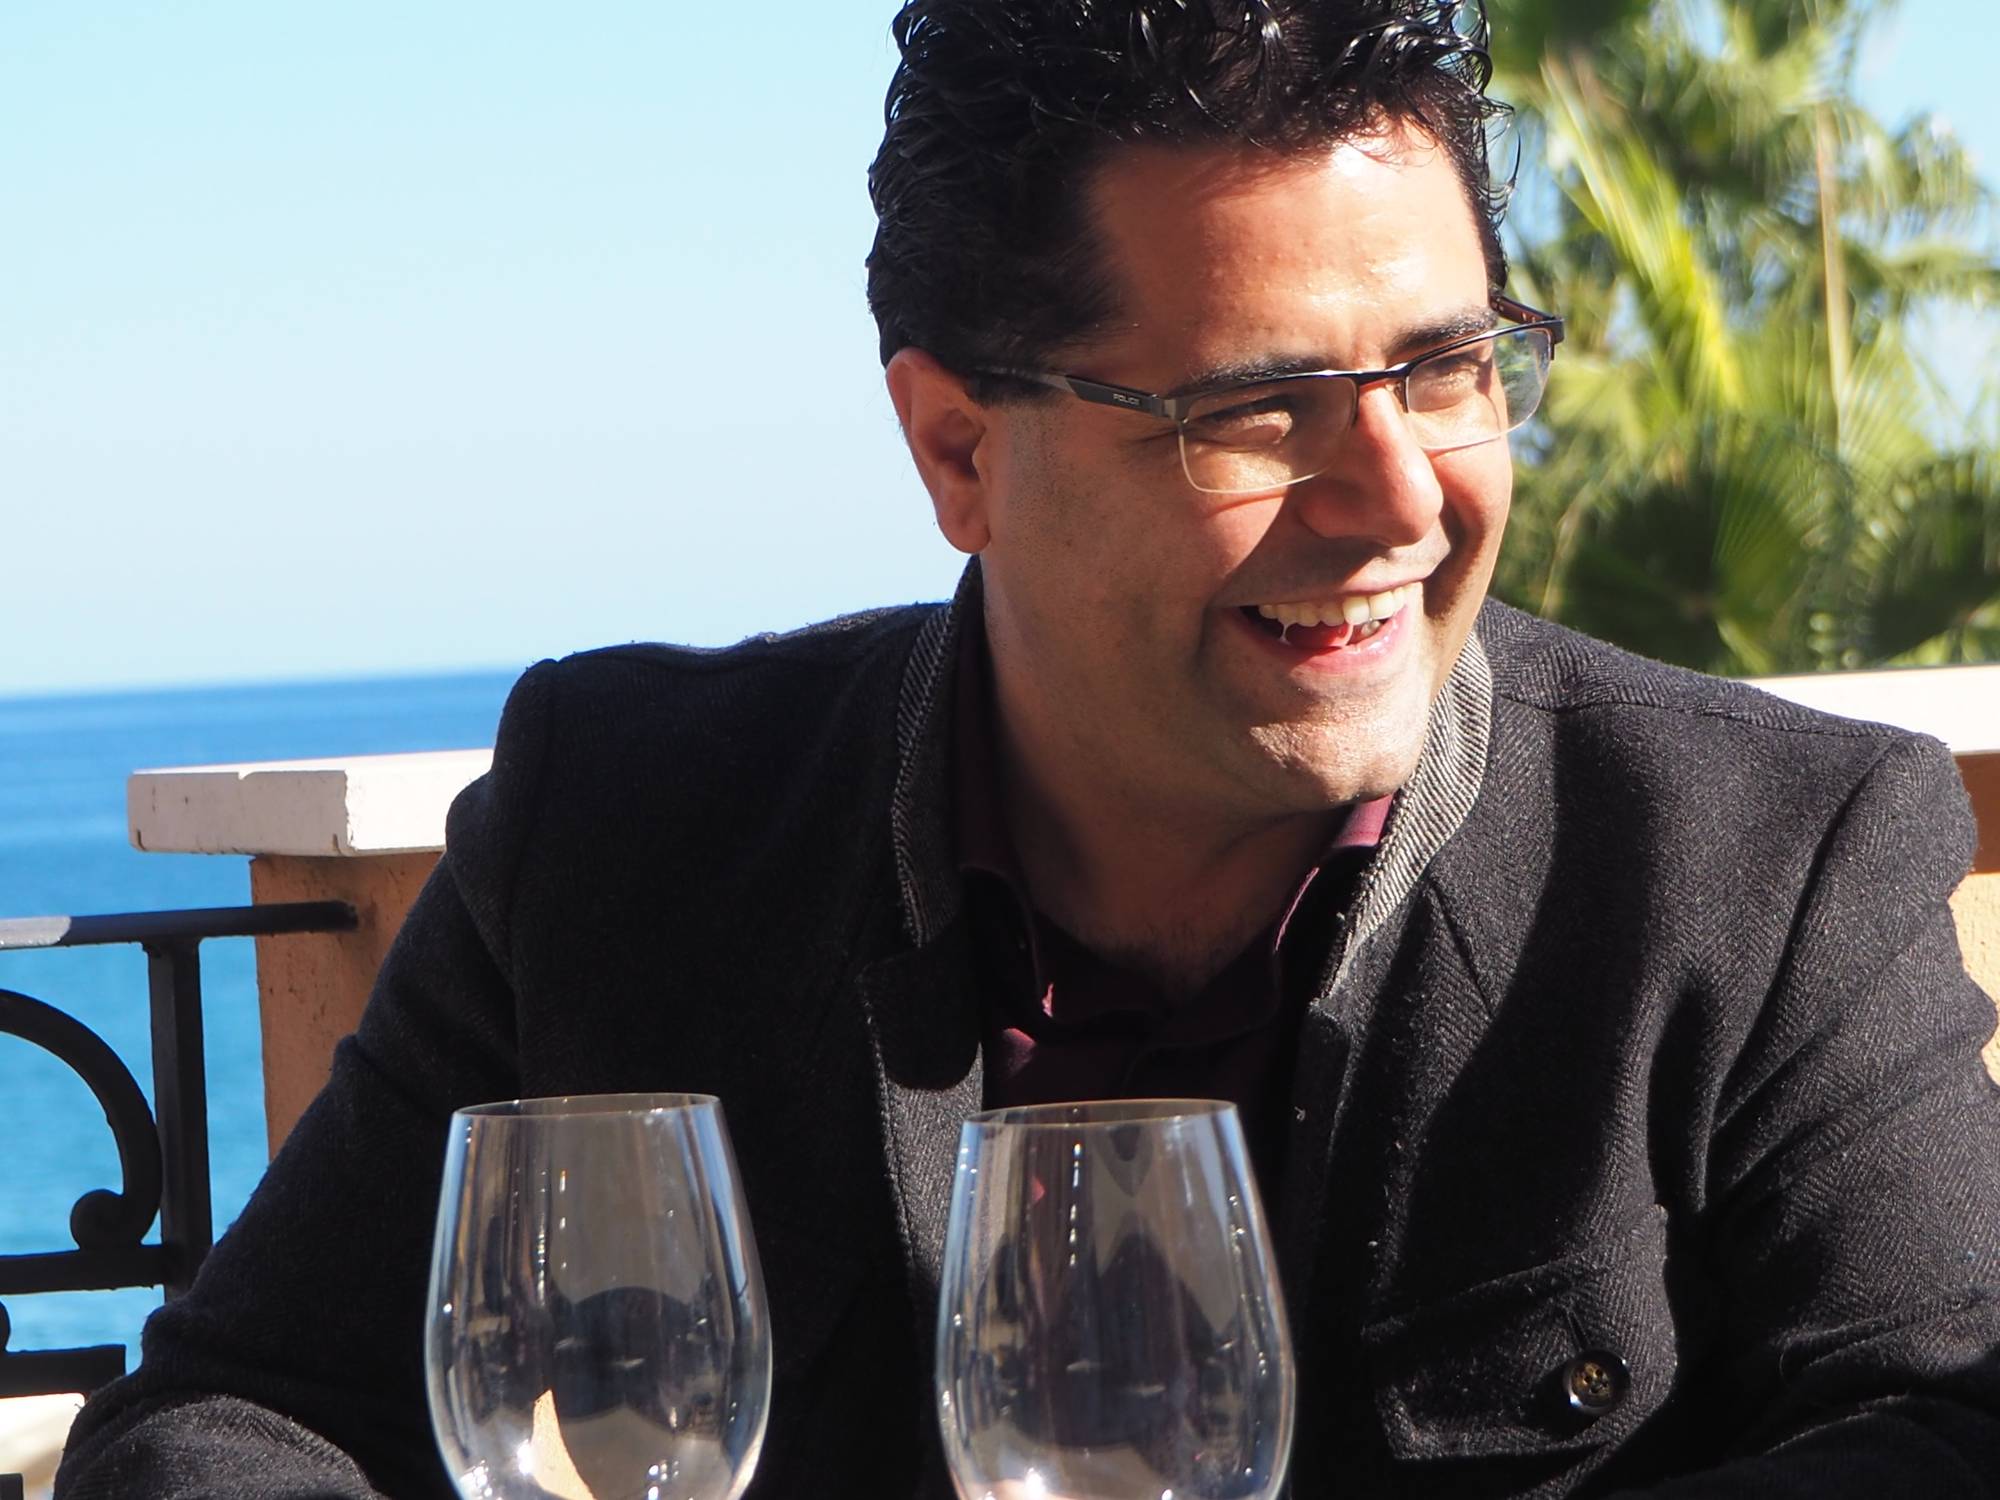 Antonio FernándezdeEbokaRestaurante enel Salón del Vino de Narbona